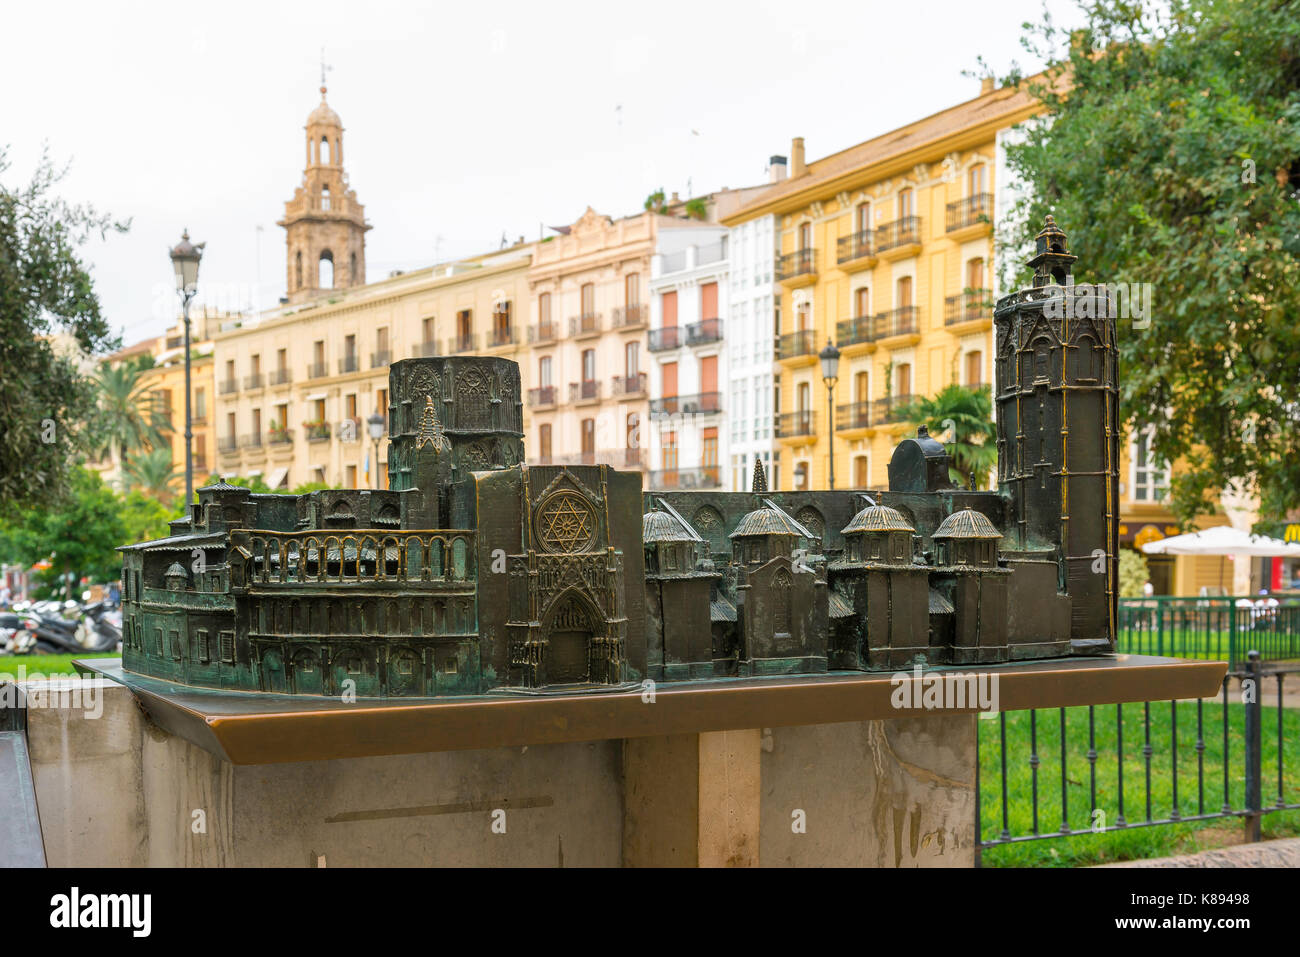 La Plaza de la Reina Valencia laiton, modèle de la Cathédrale de Valencia se trouve dans le bâtiment de la place de la Reine dans le centre historique de la ville, de l'Espagne. Banque D'Images